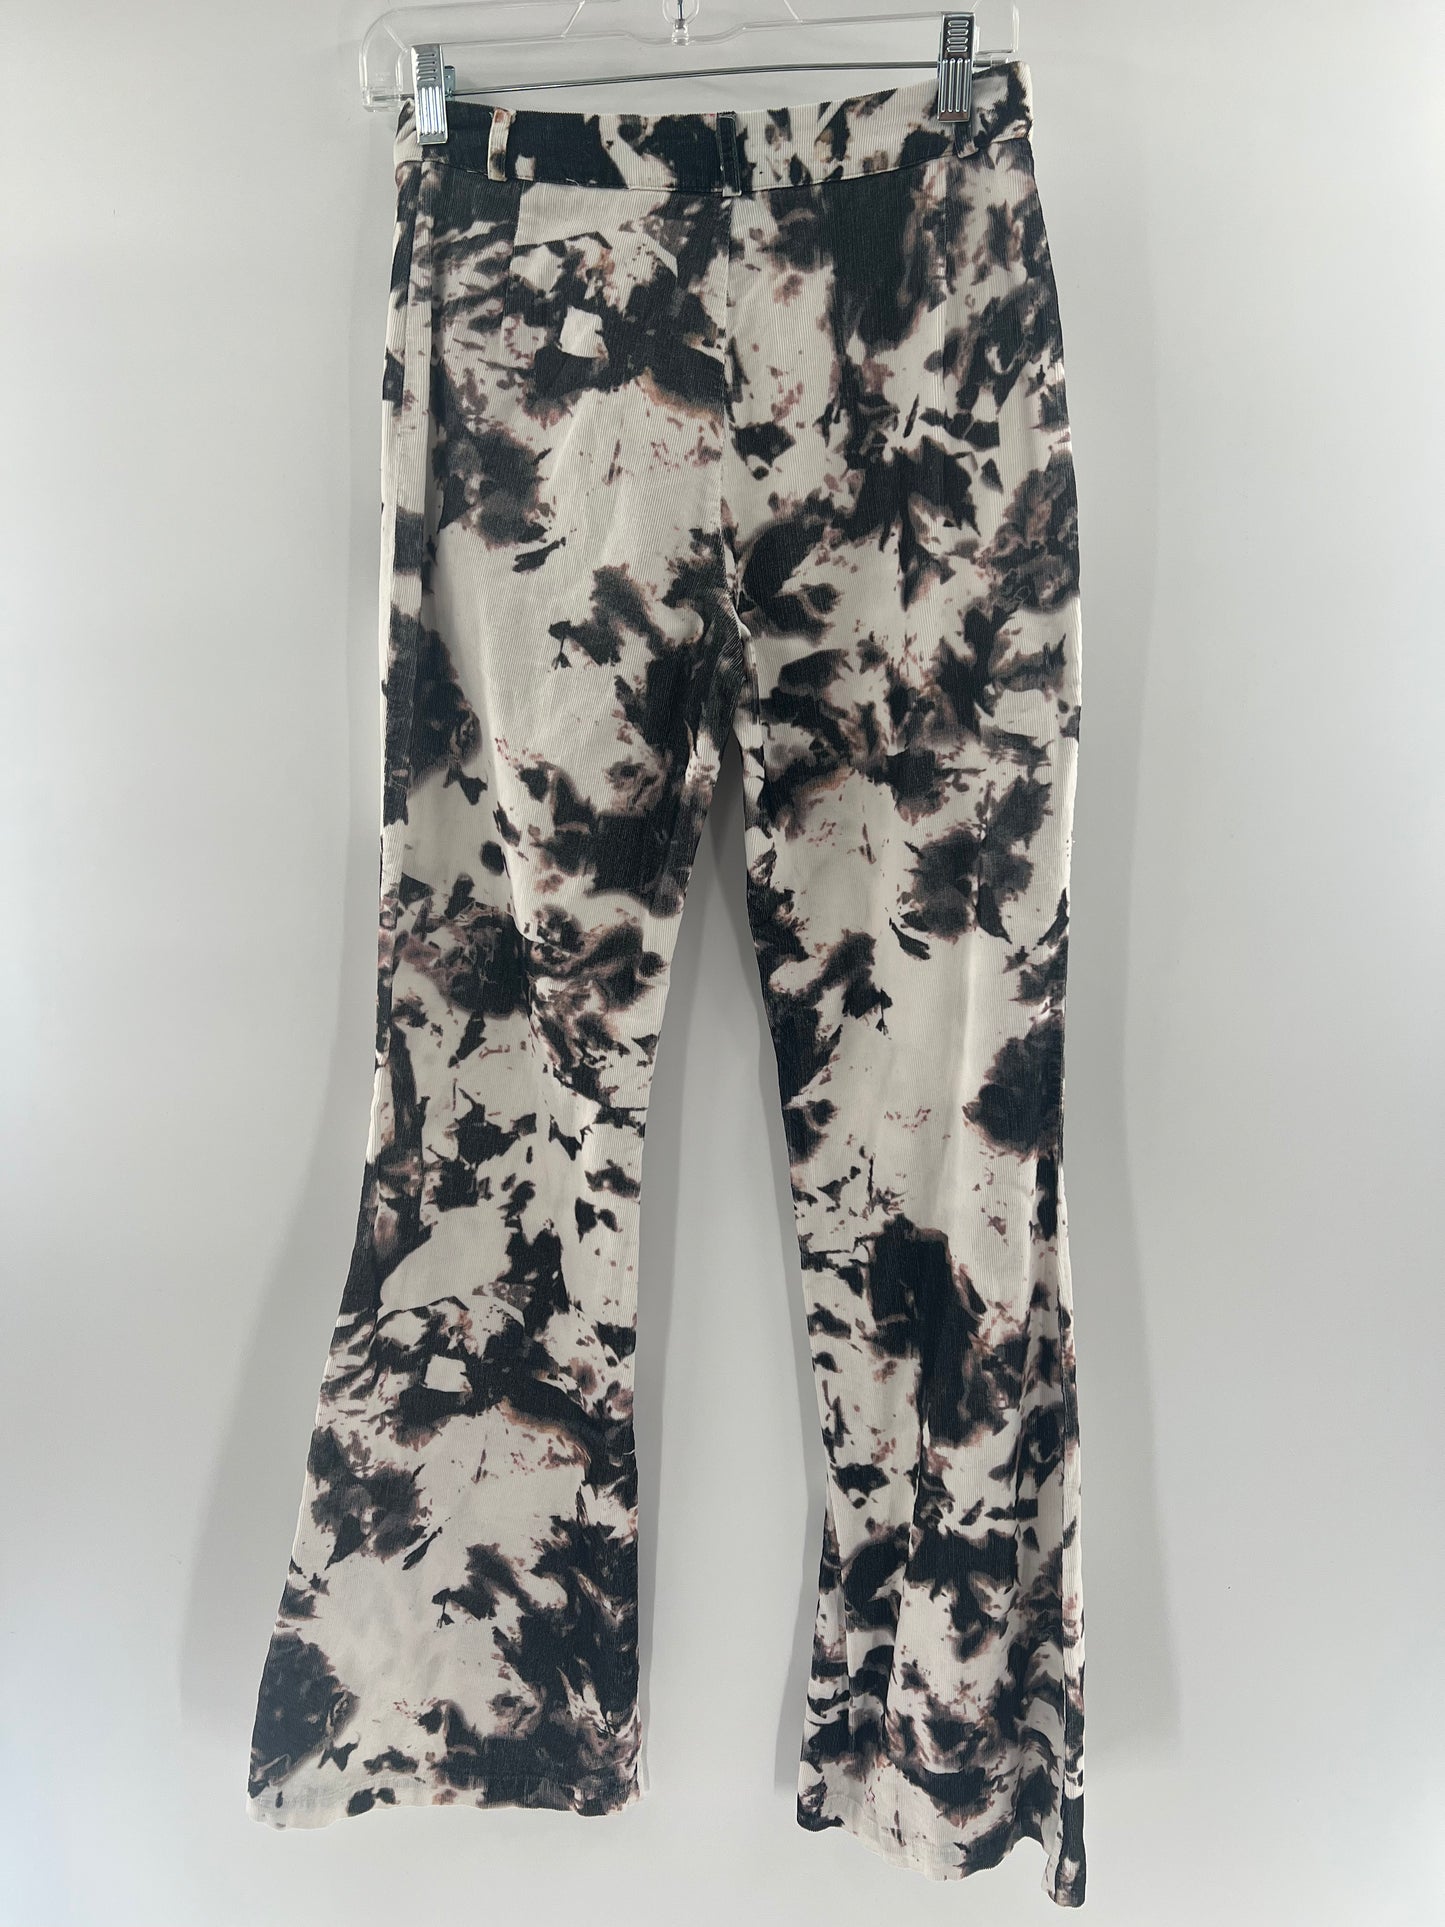 Cynthia Rowley Tie Dye Corduroy Flare Pants (Size 0)